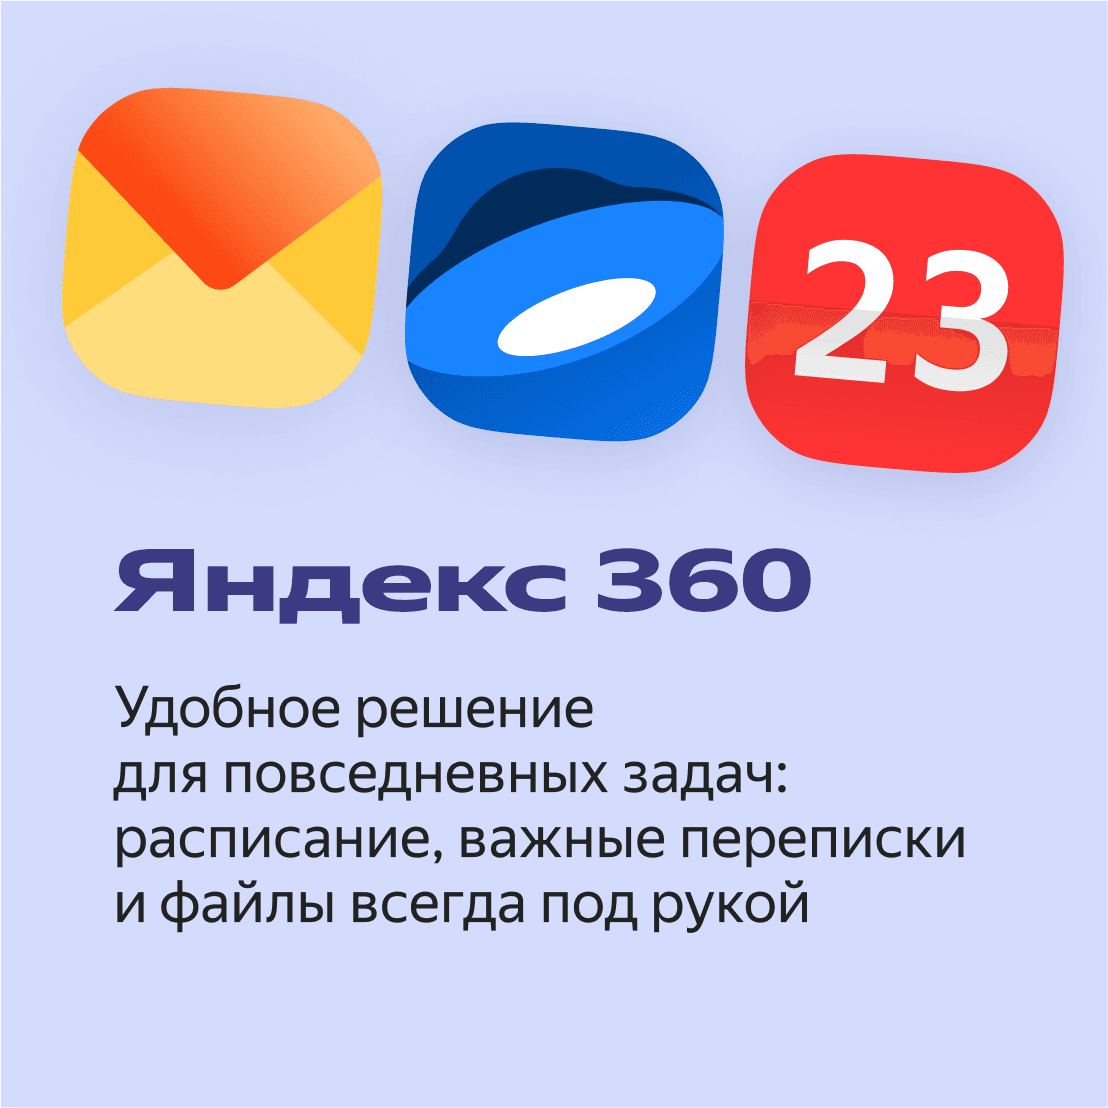 Яндекс 360 2